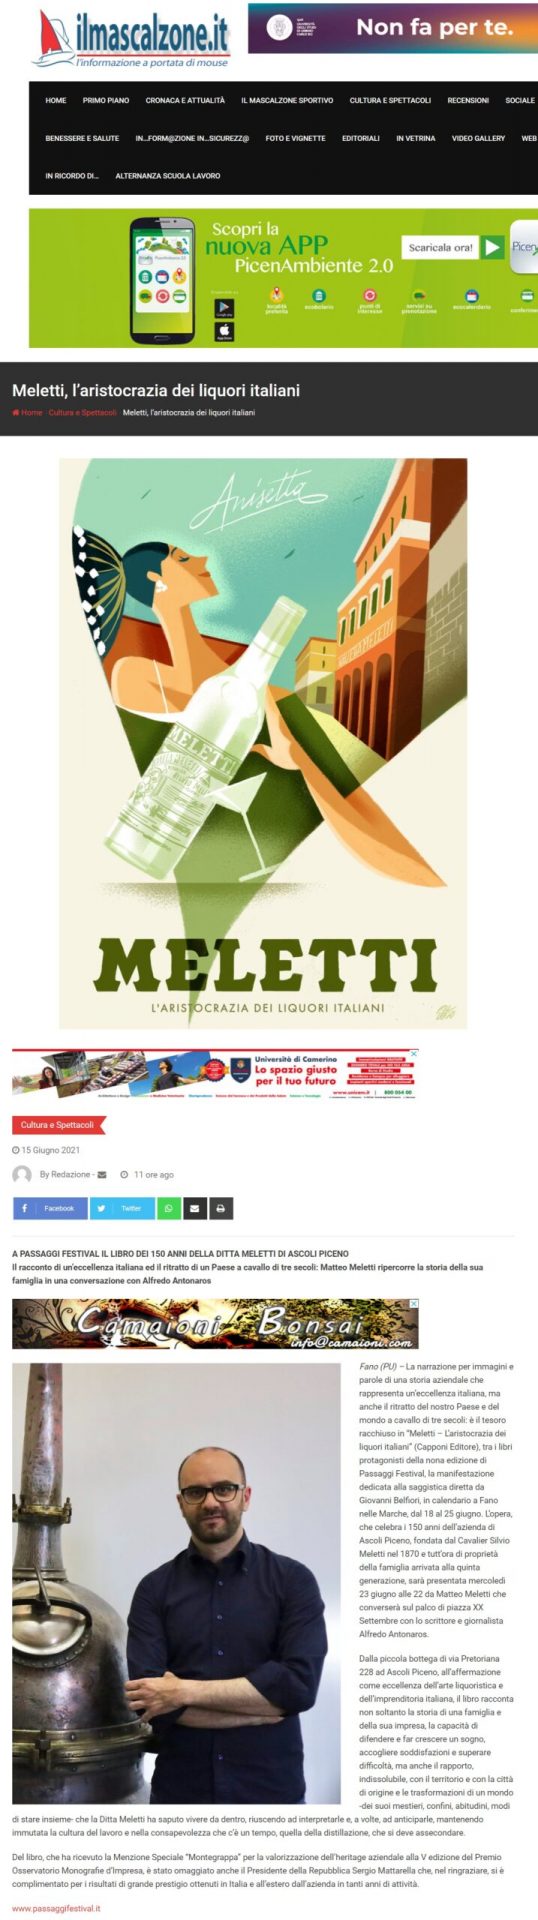 meletti-laristocrazia-dei-liquori-italiani